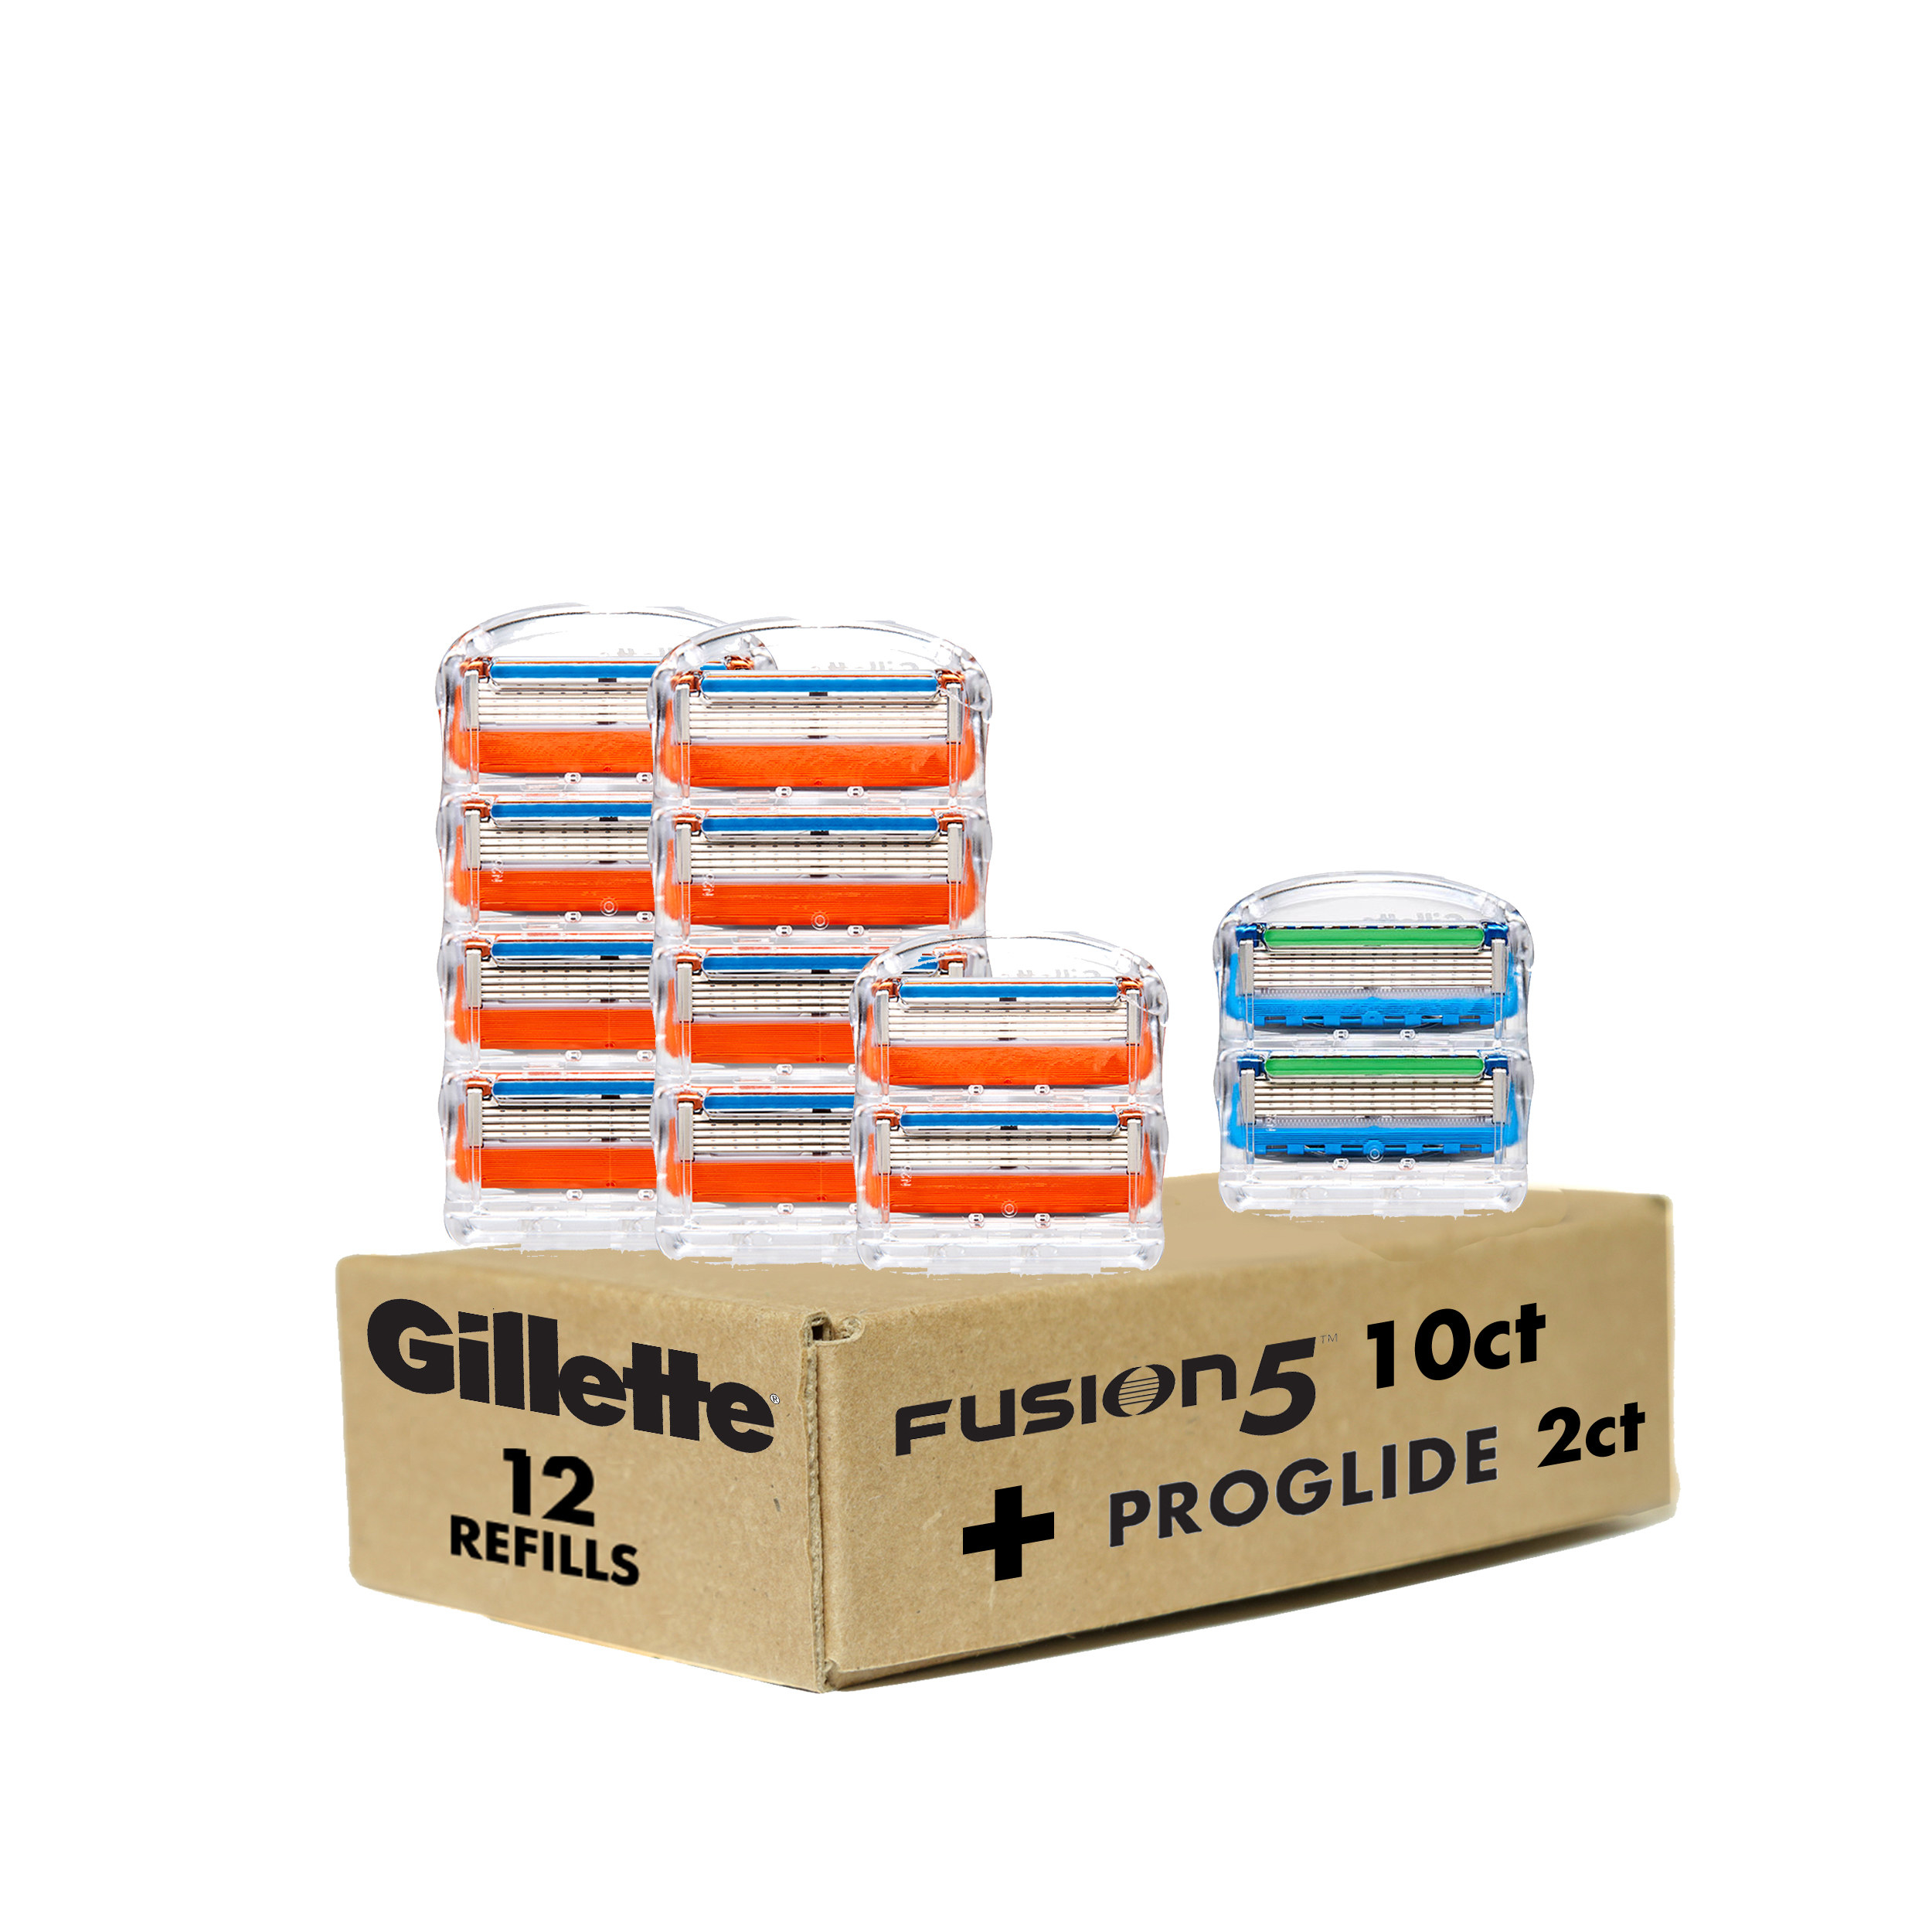 Gillette Fusion5 and ProGlide razor blade refills